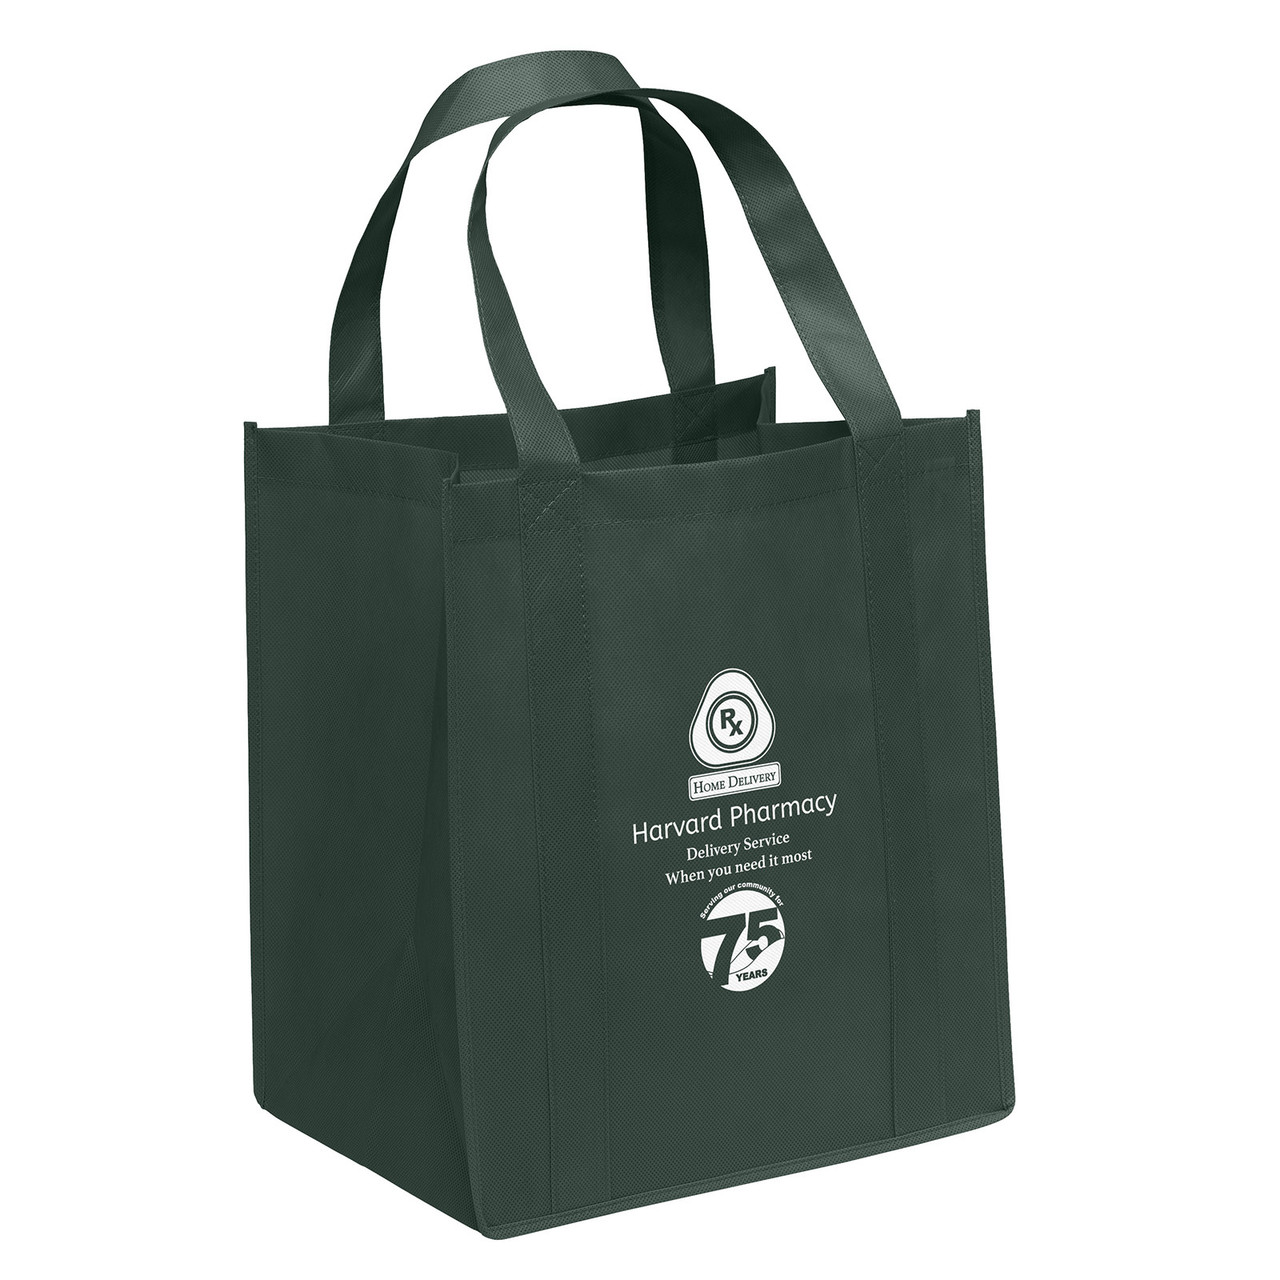 Custom Printed Tote Bags- Low Minimum – ShopKalia